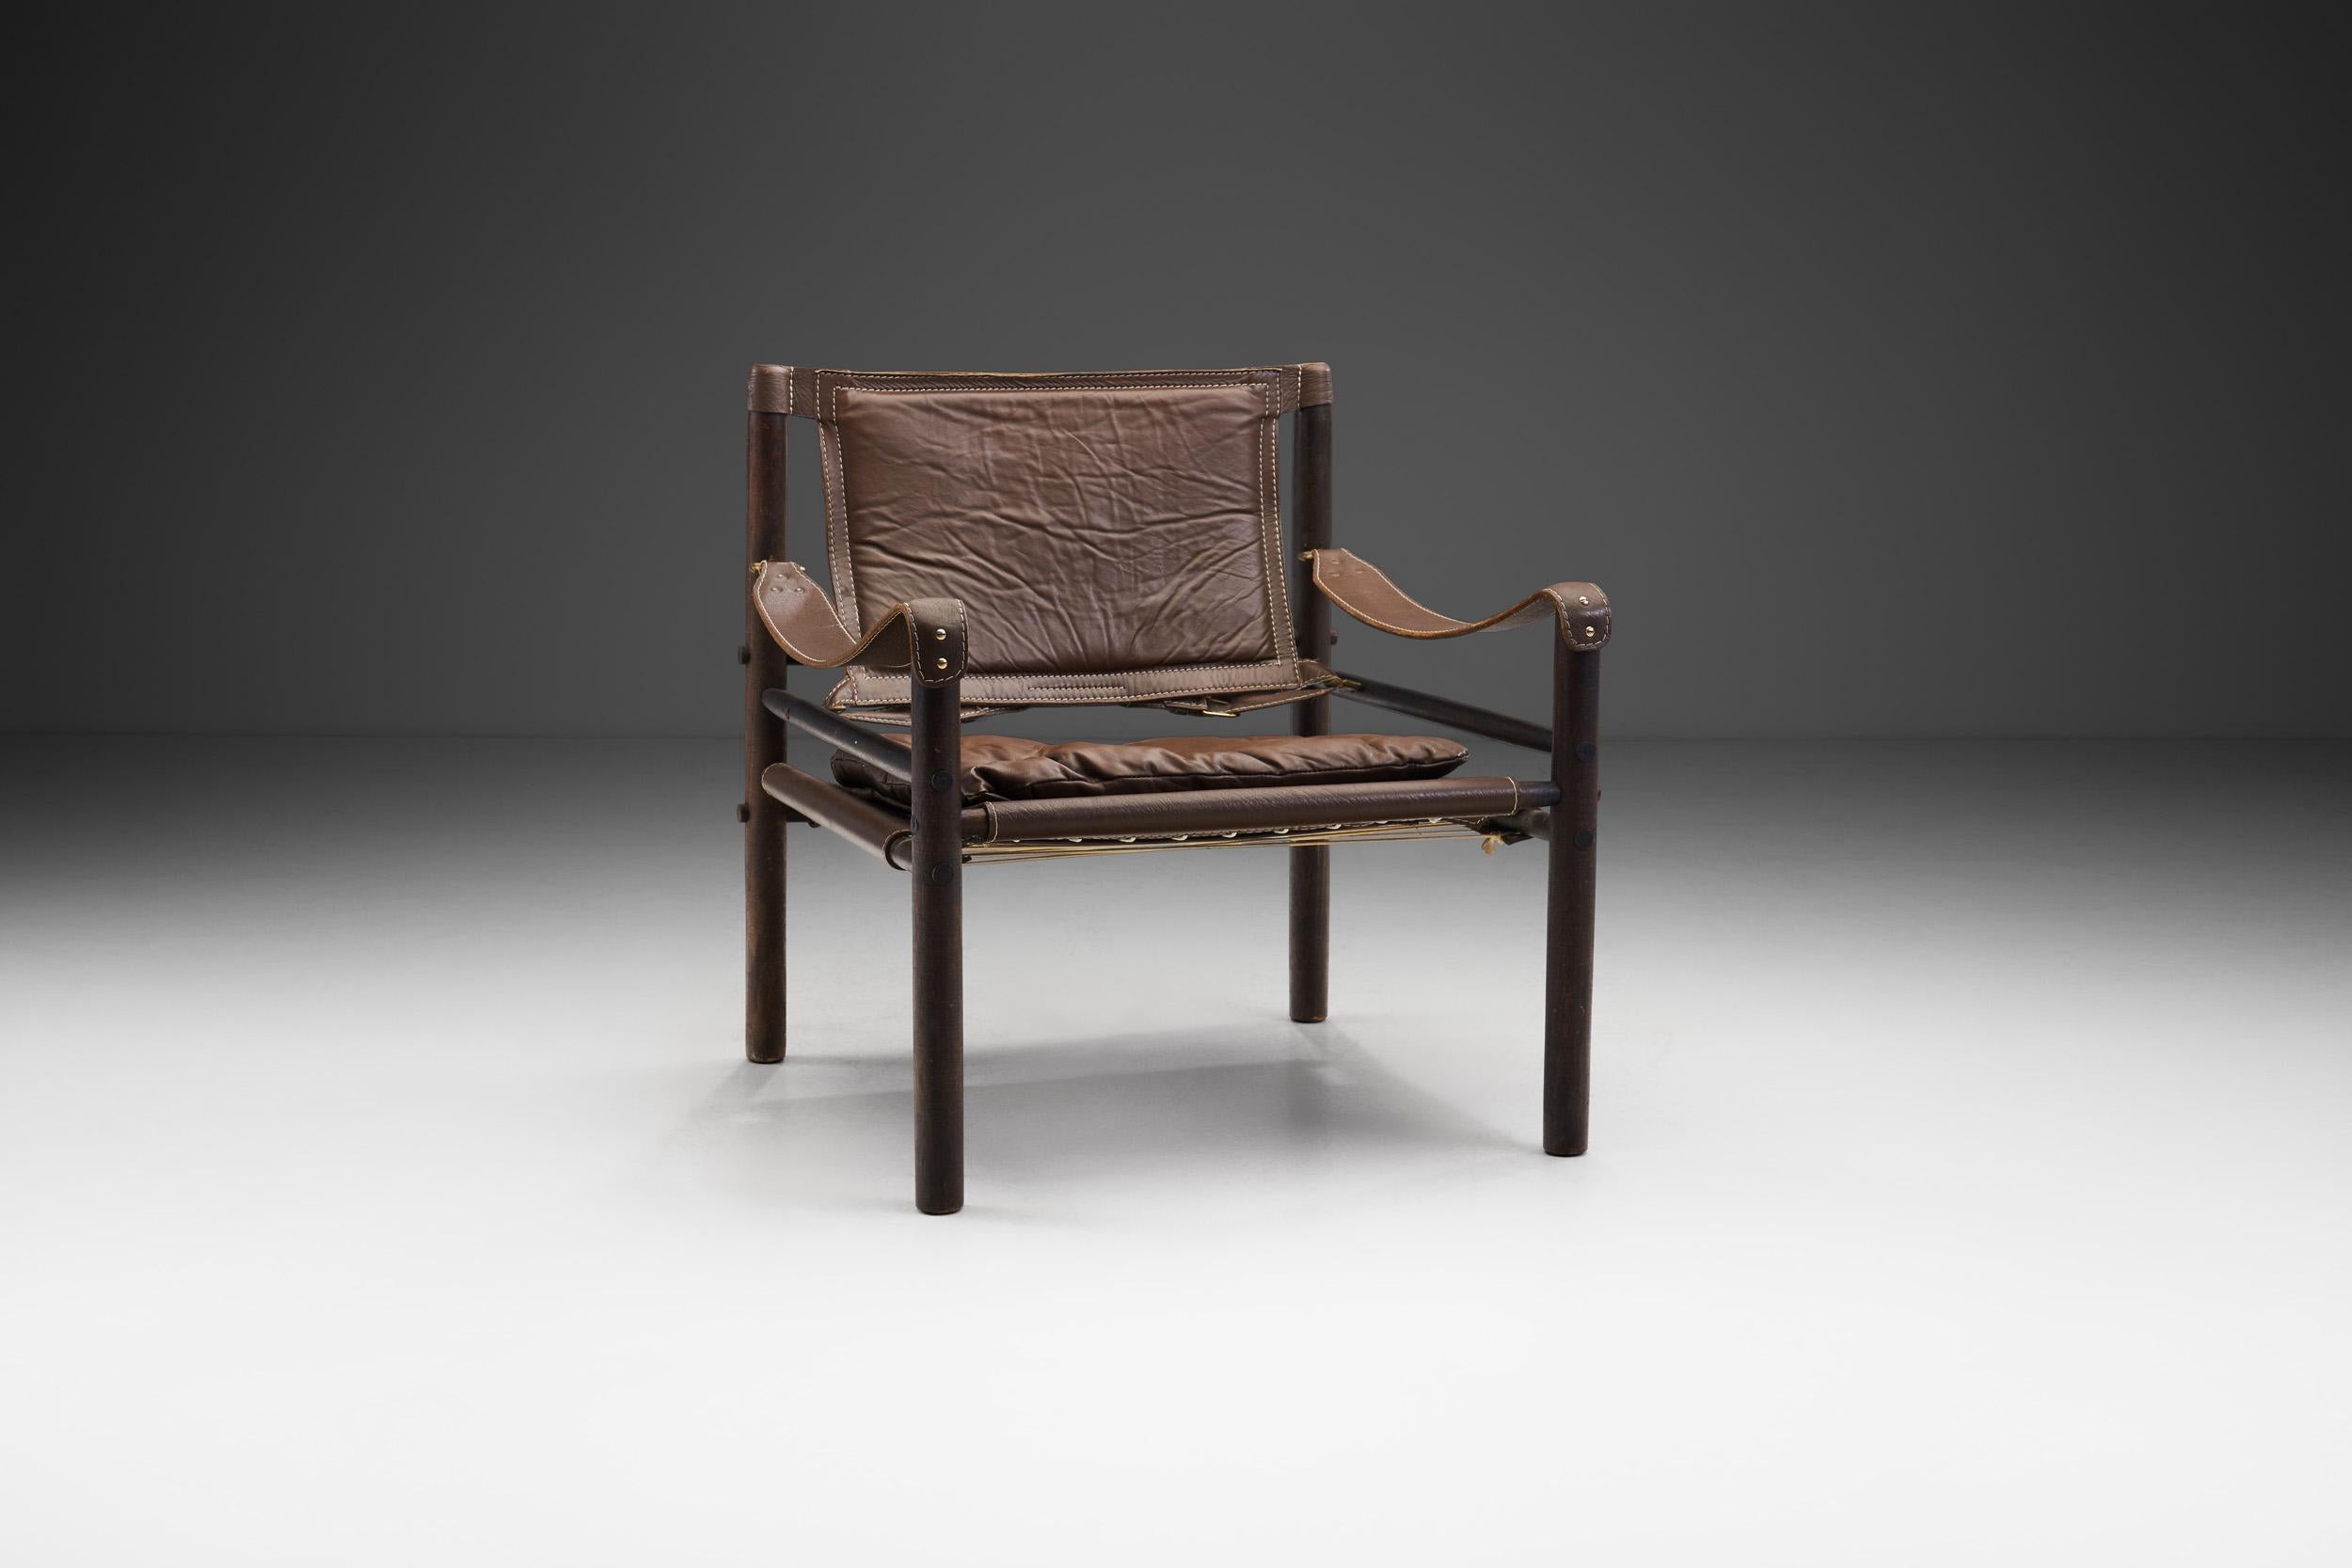 La chaise Sirocco originale a été conçue par Arne Norell en 1964 et a été fabriquée à la main en Suède dans l'usine que Norell avait créée dans les années 1960. Ce modèle est un classique moderne qui présente toutes les caractéristiques d'une